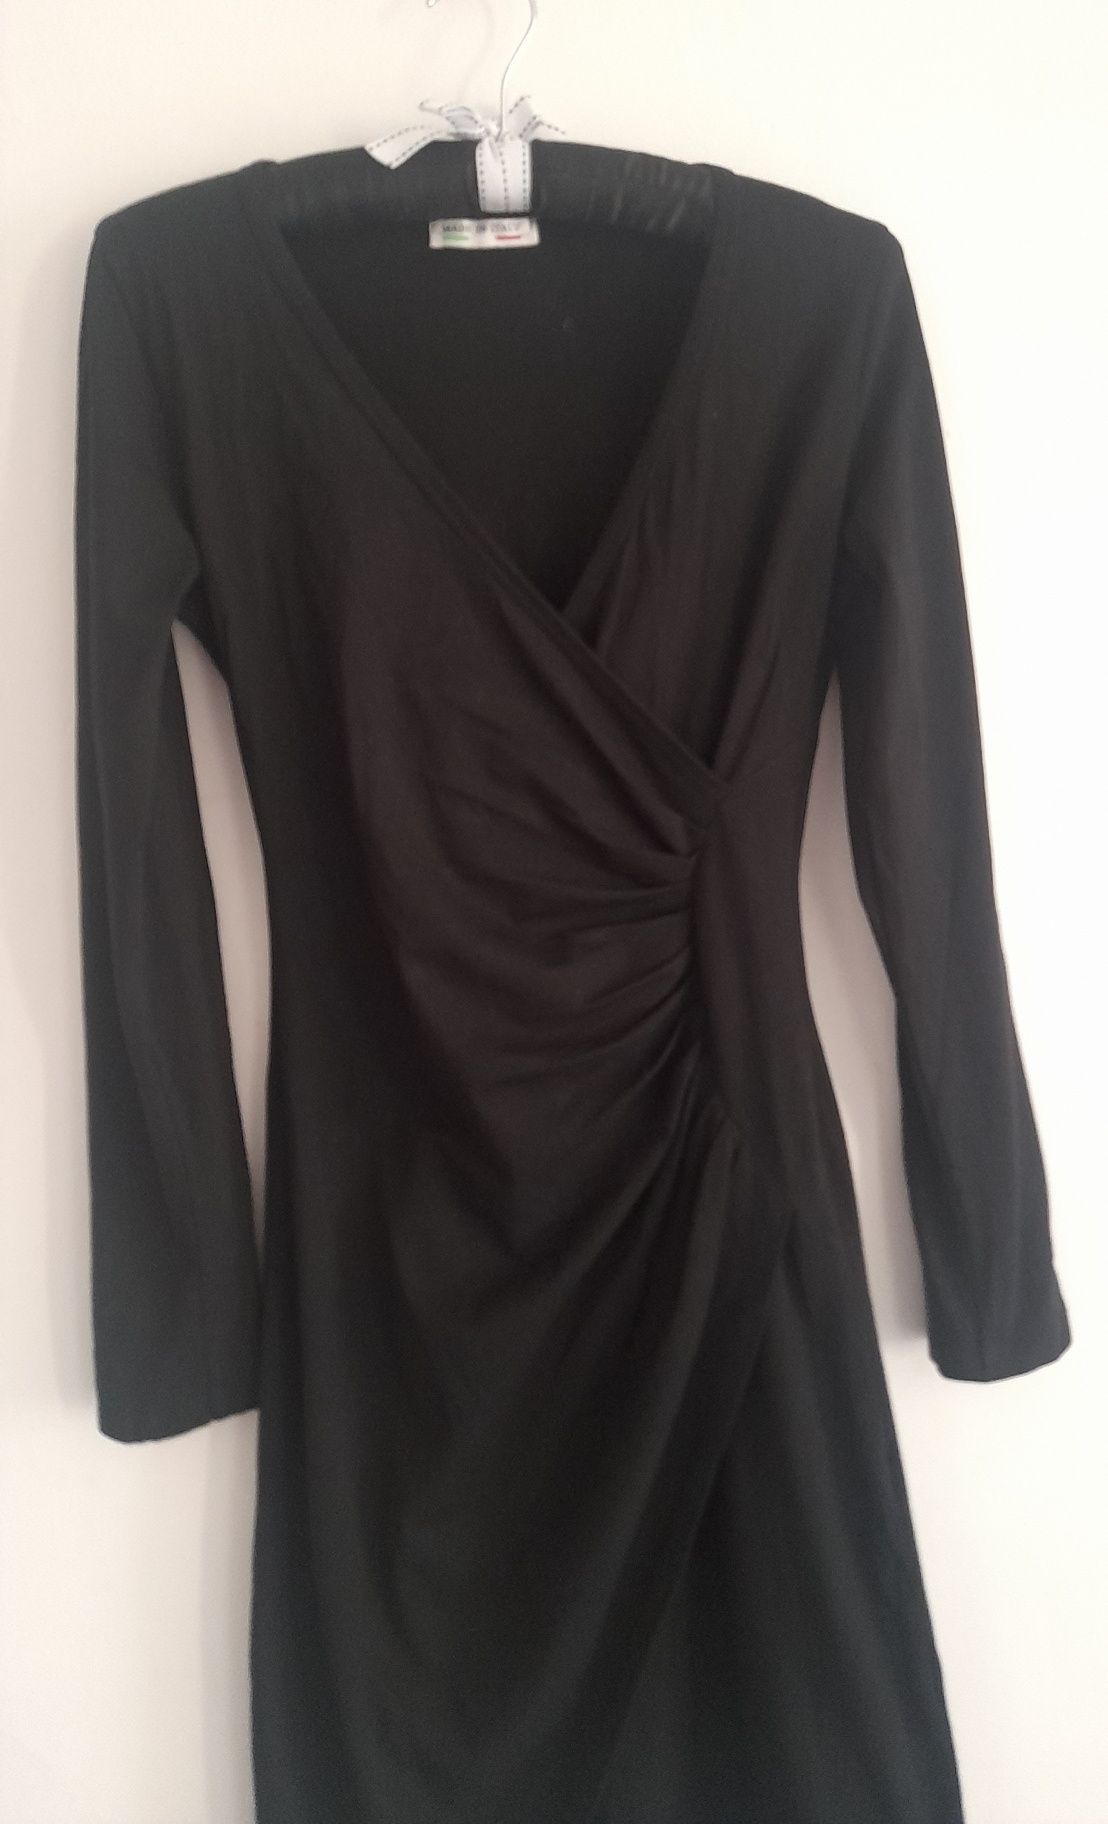 SUPER OKAZJA włoska czarna sexi sukienka bawełna 36 s 34 s